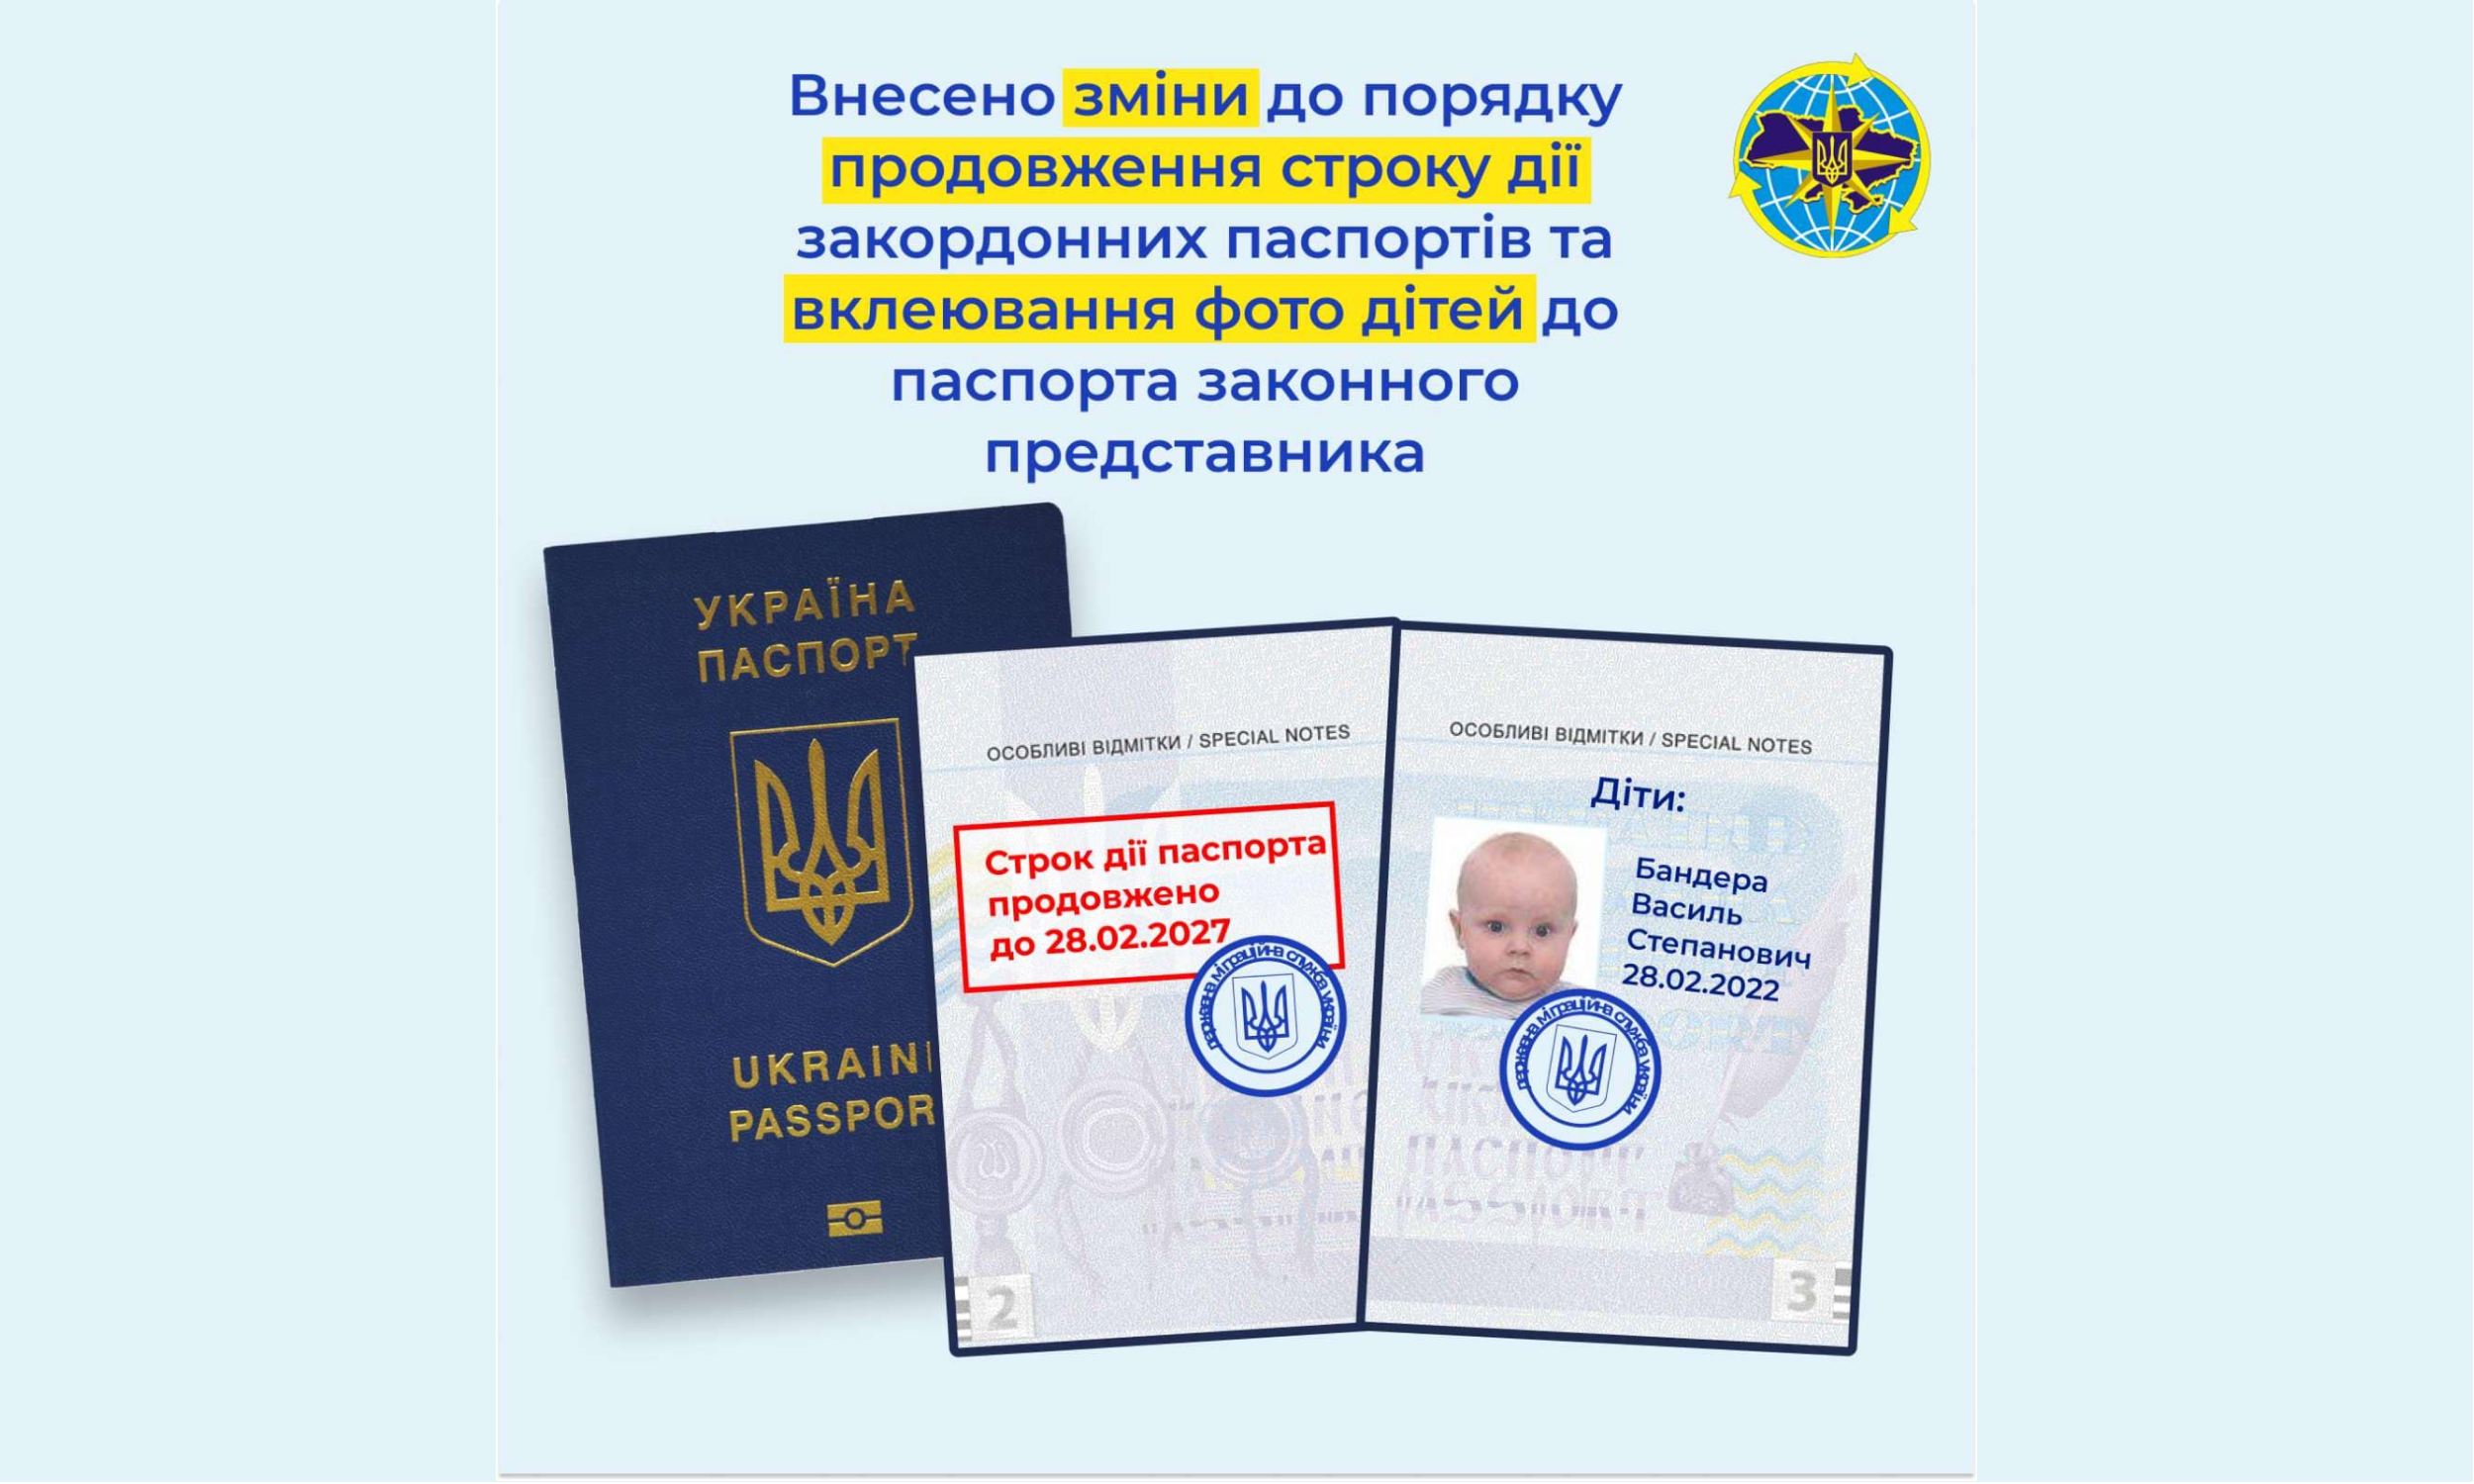 Урядом вдосконалено процедуру продовження строку дії закордонних паспортів та вклеювання до них фотокарток дітей